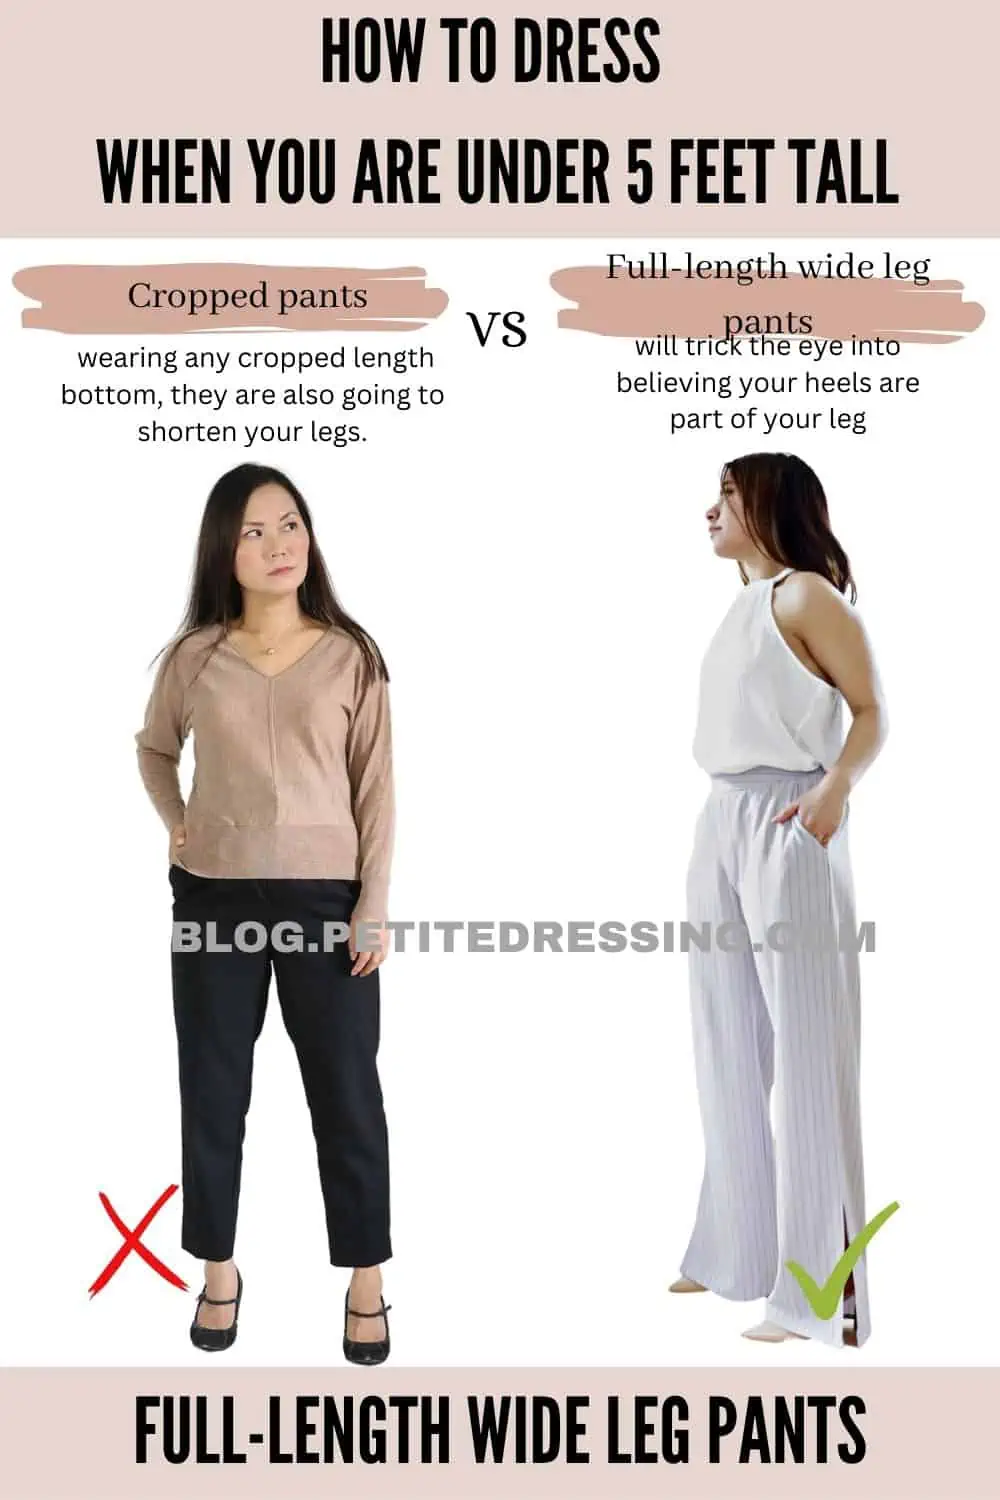 https://blog.petitedressing.com/wp-content/uploads/2019/03/Full-length-wide-leg-pants.webp